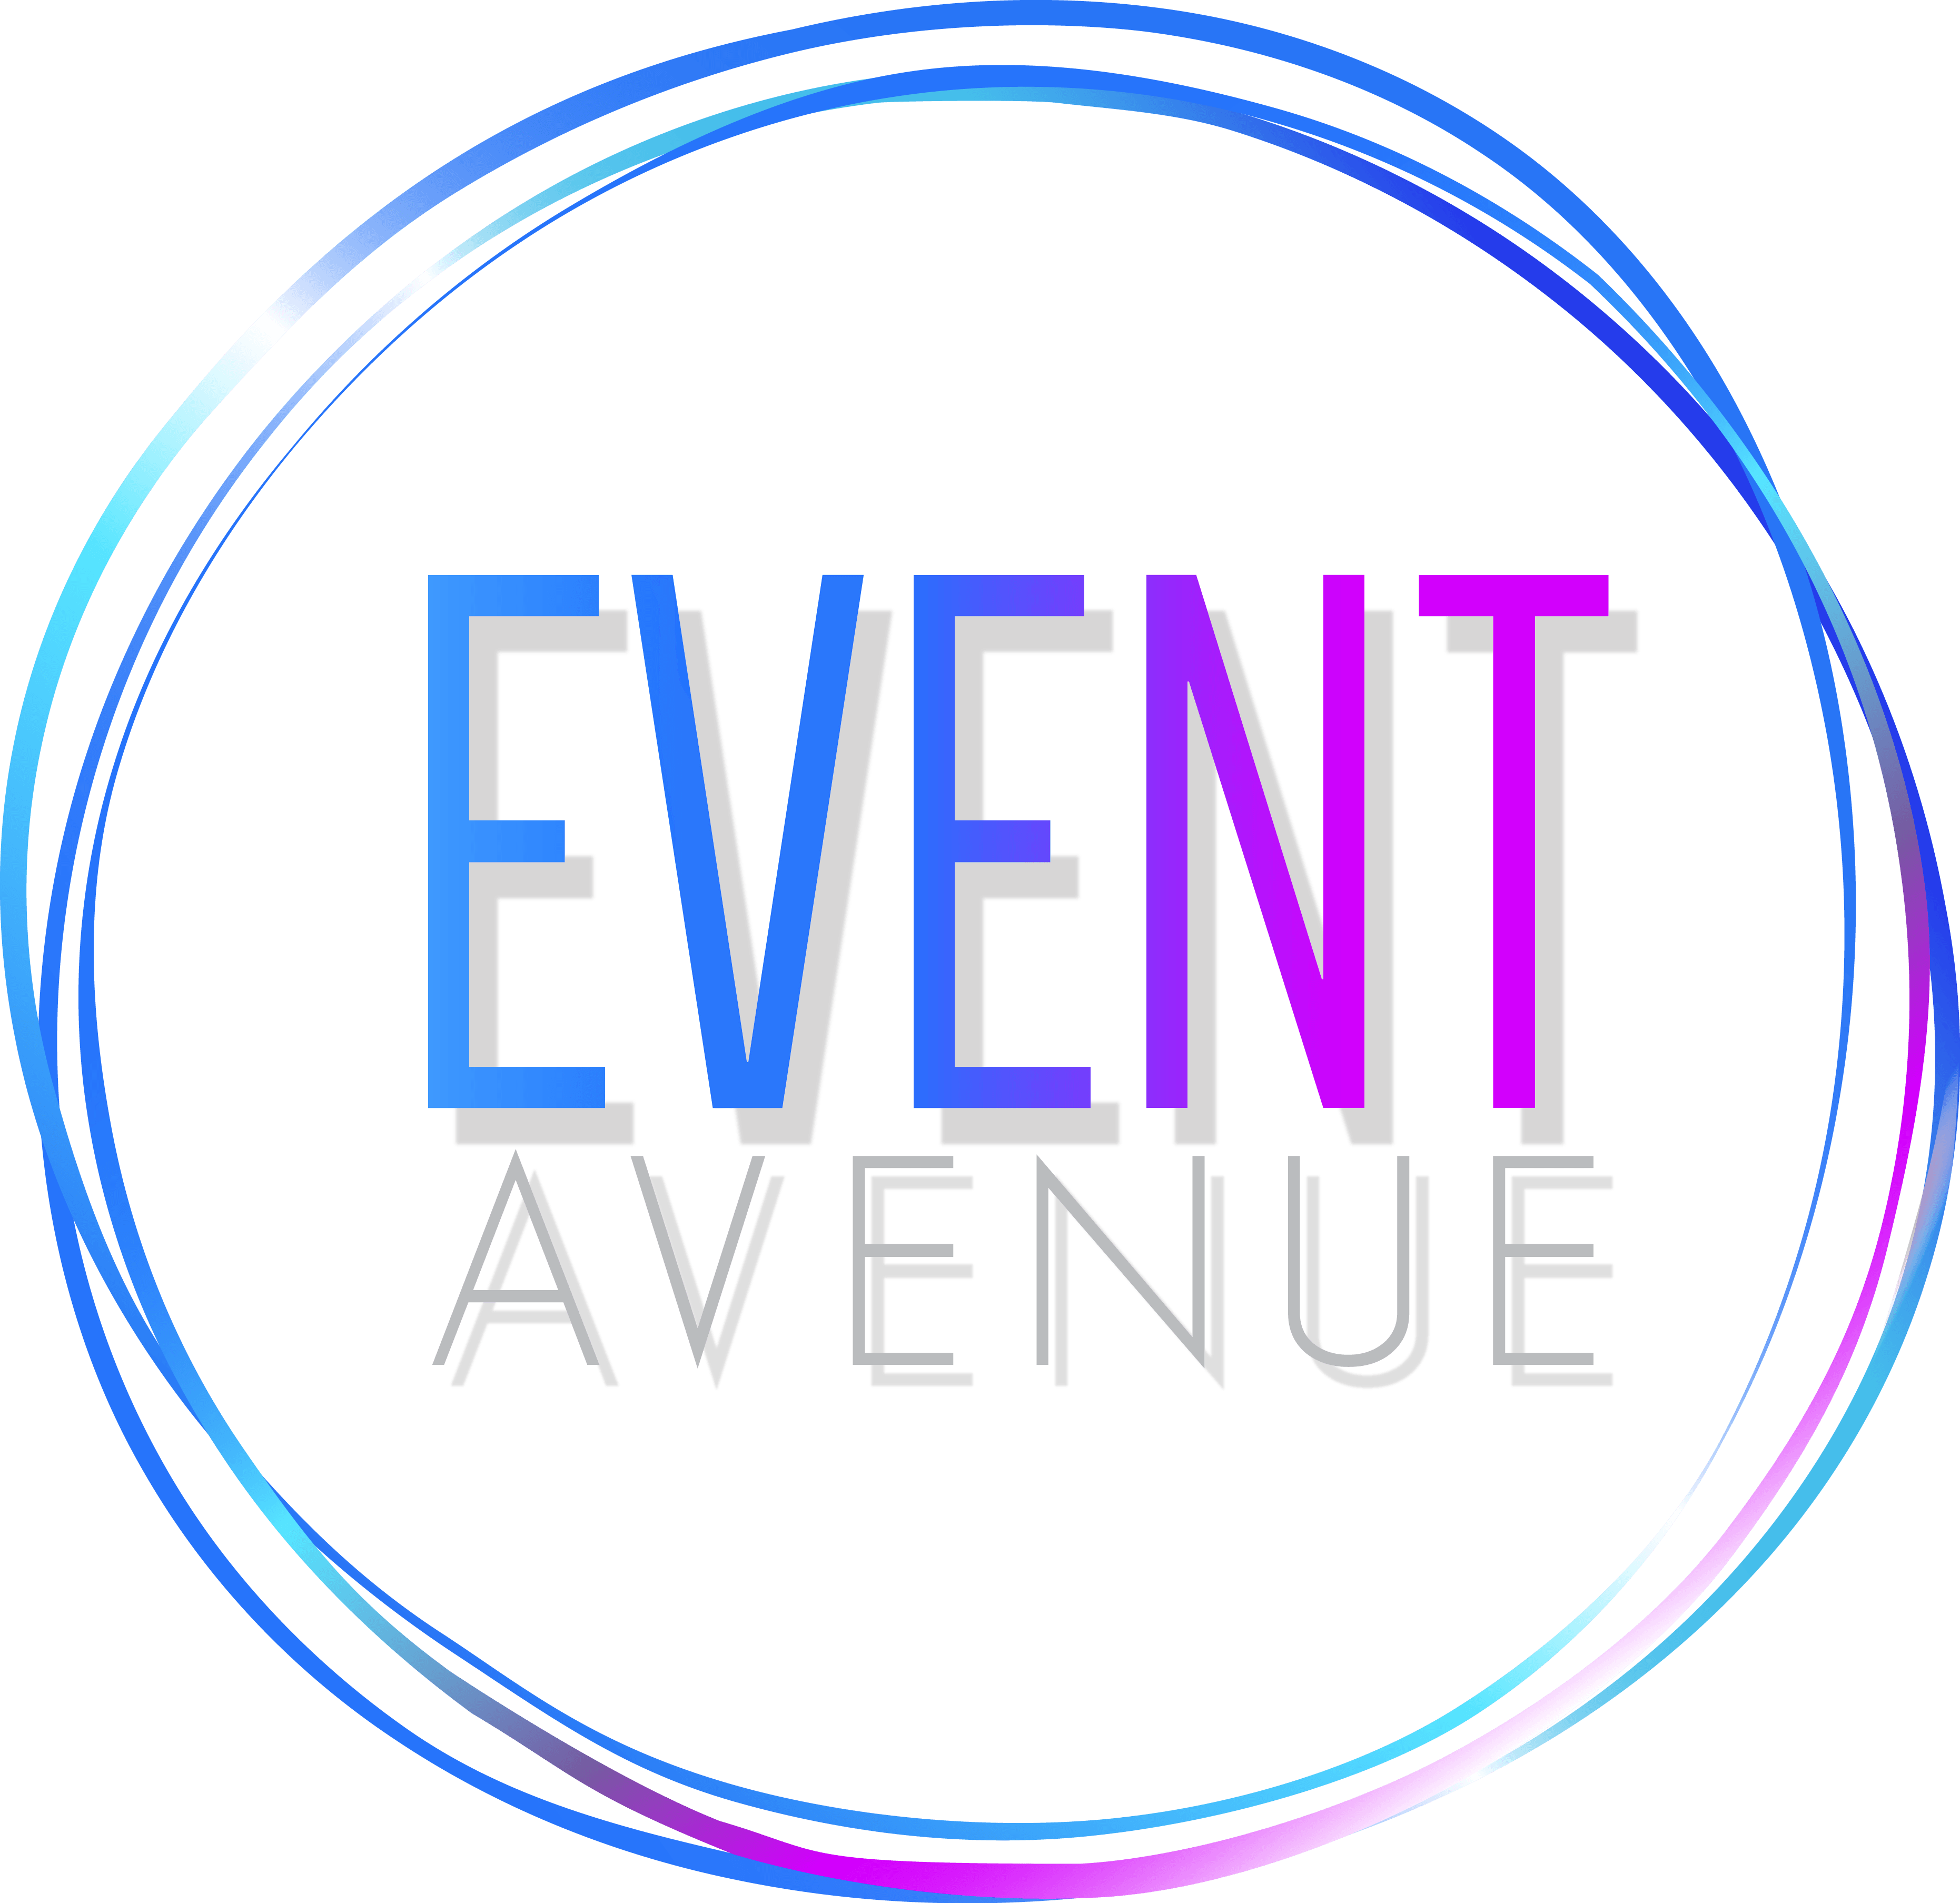 Event Avenue Event Avenue - Events Avenue (3722x3614), Png Download